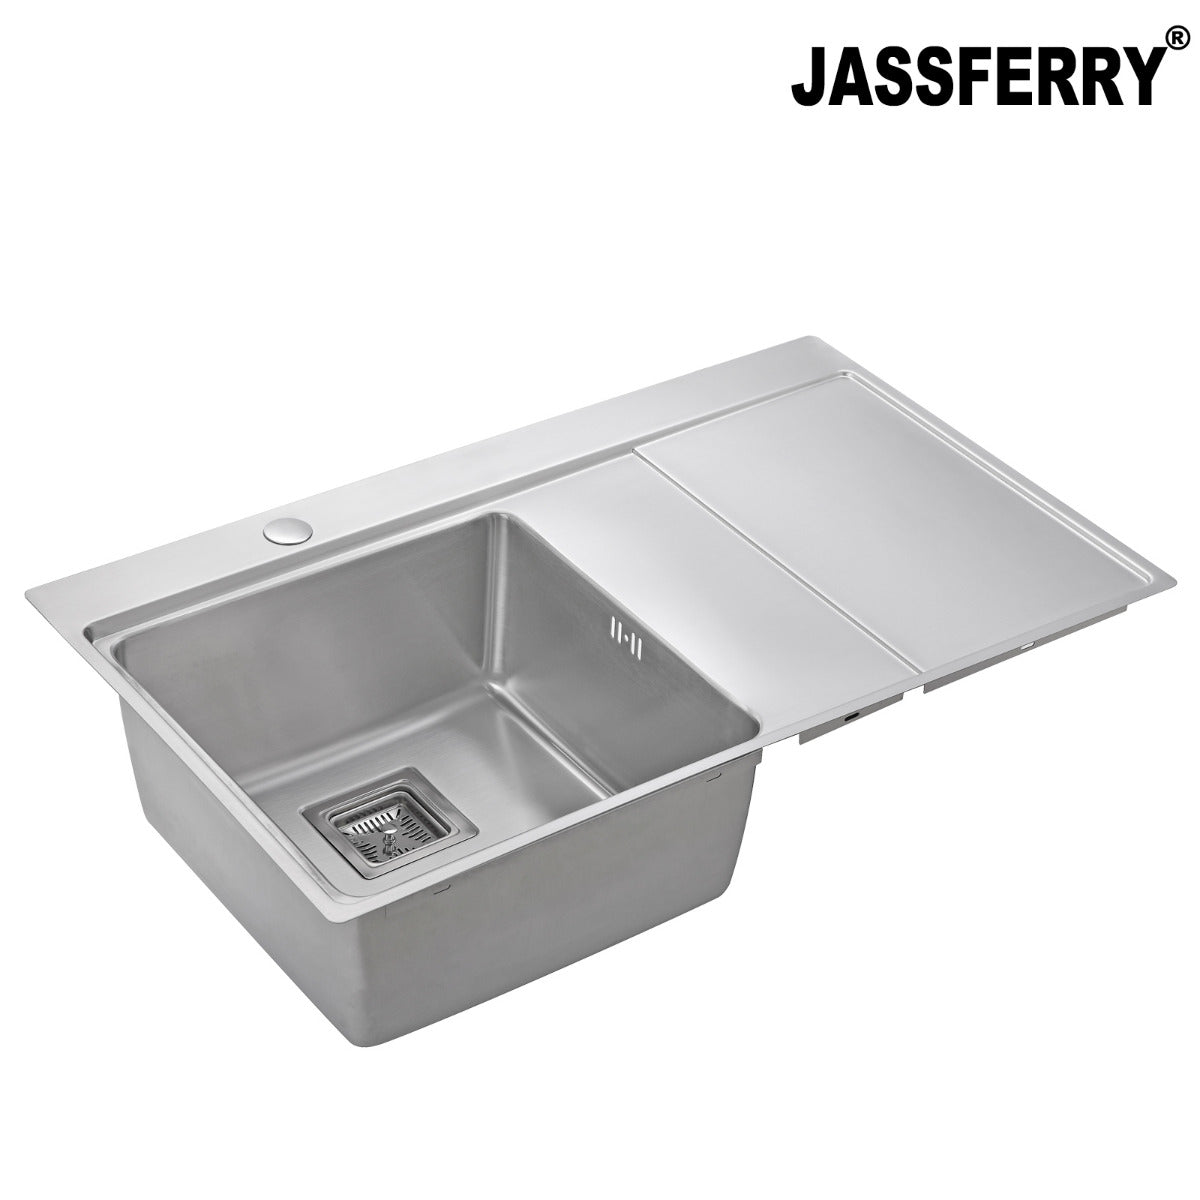 JassferryJASSFERRY 860x520 mm Brilliant Stainless Steel Kitchen Sink Single 1 Bowl Righthand Drainer - 660Kitchen Sinks